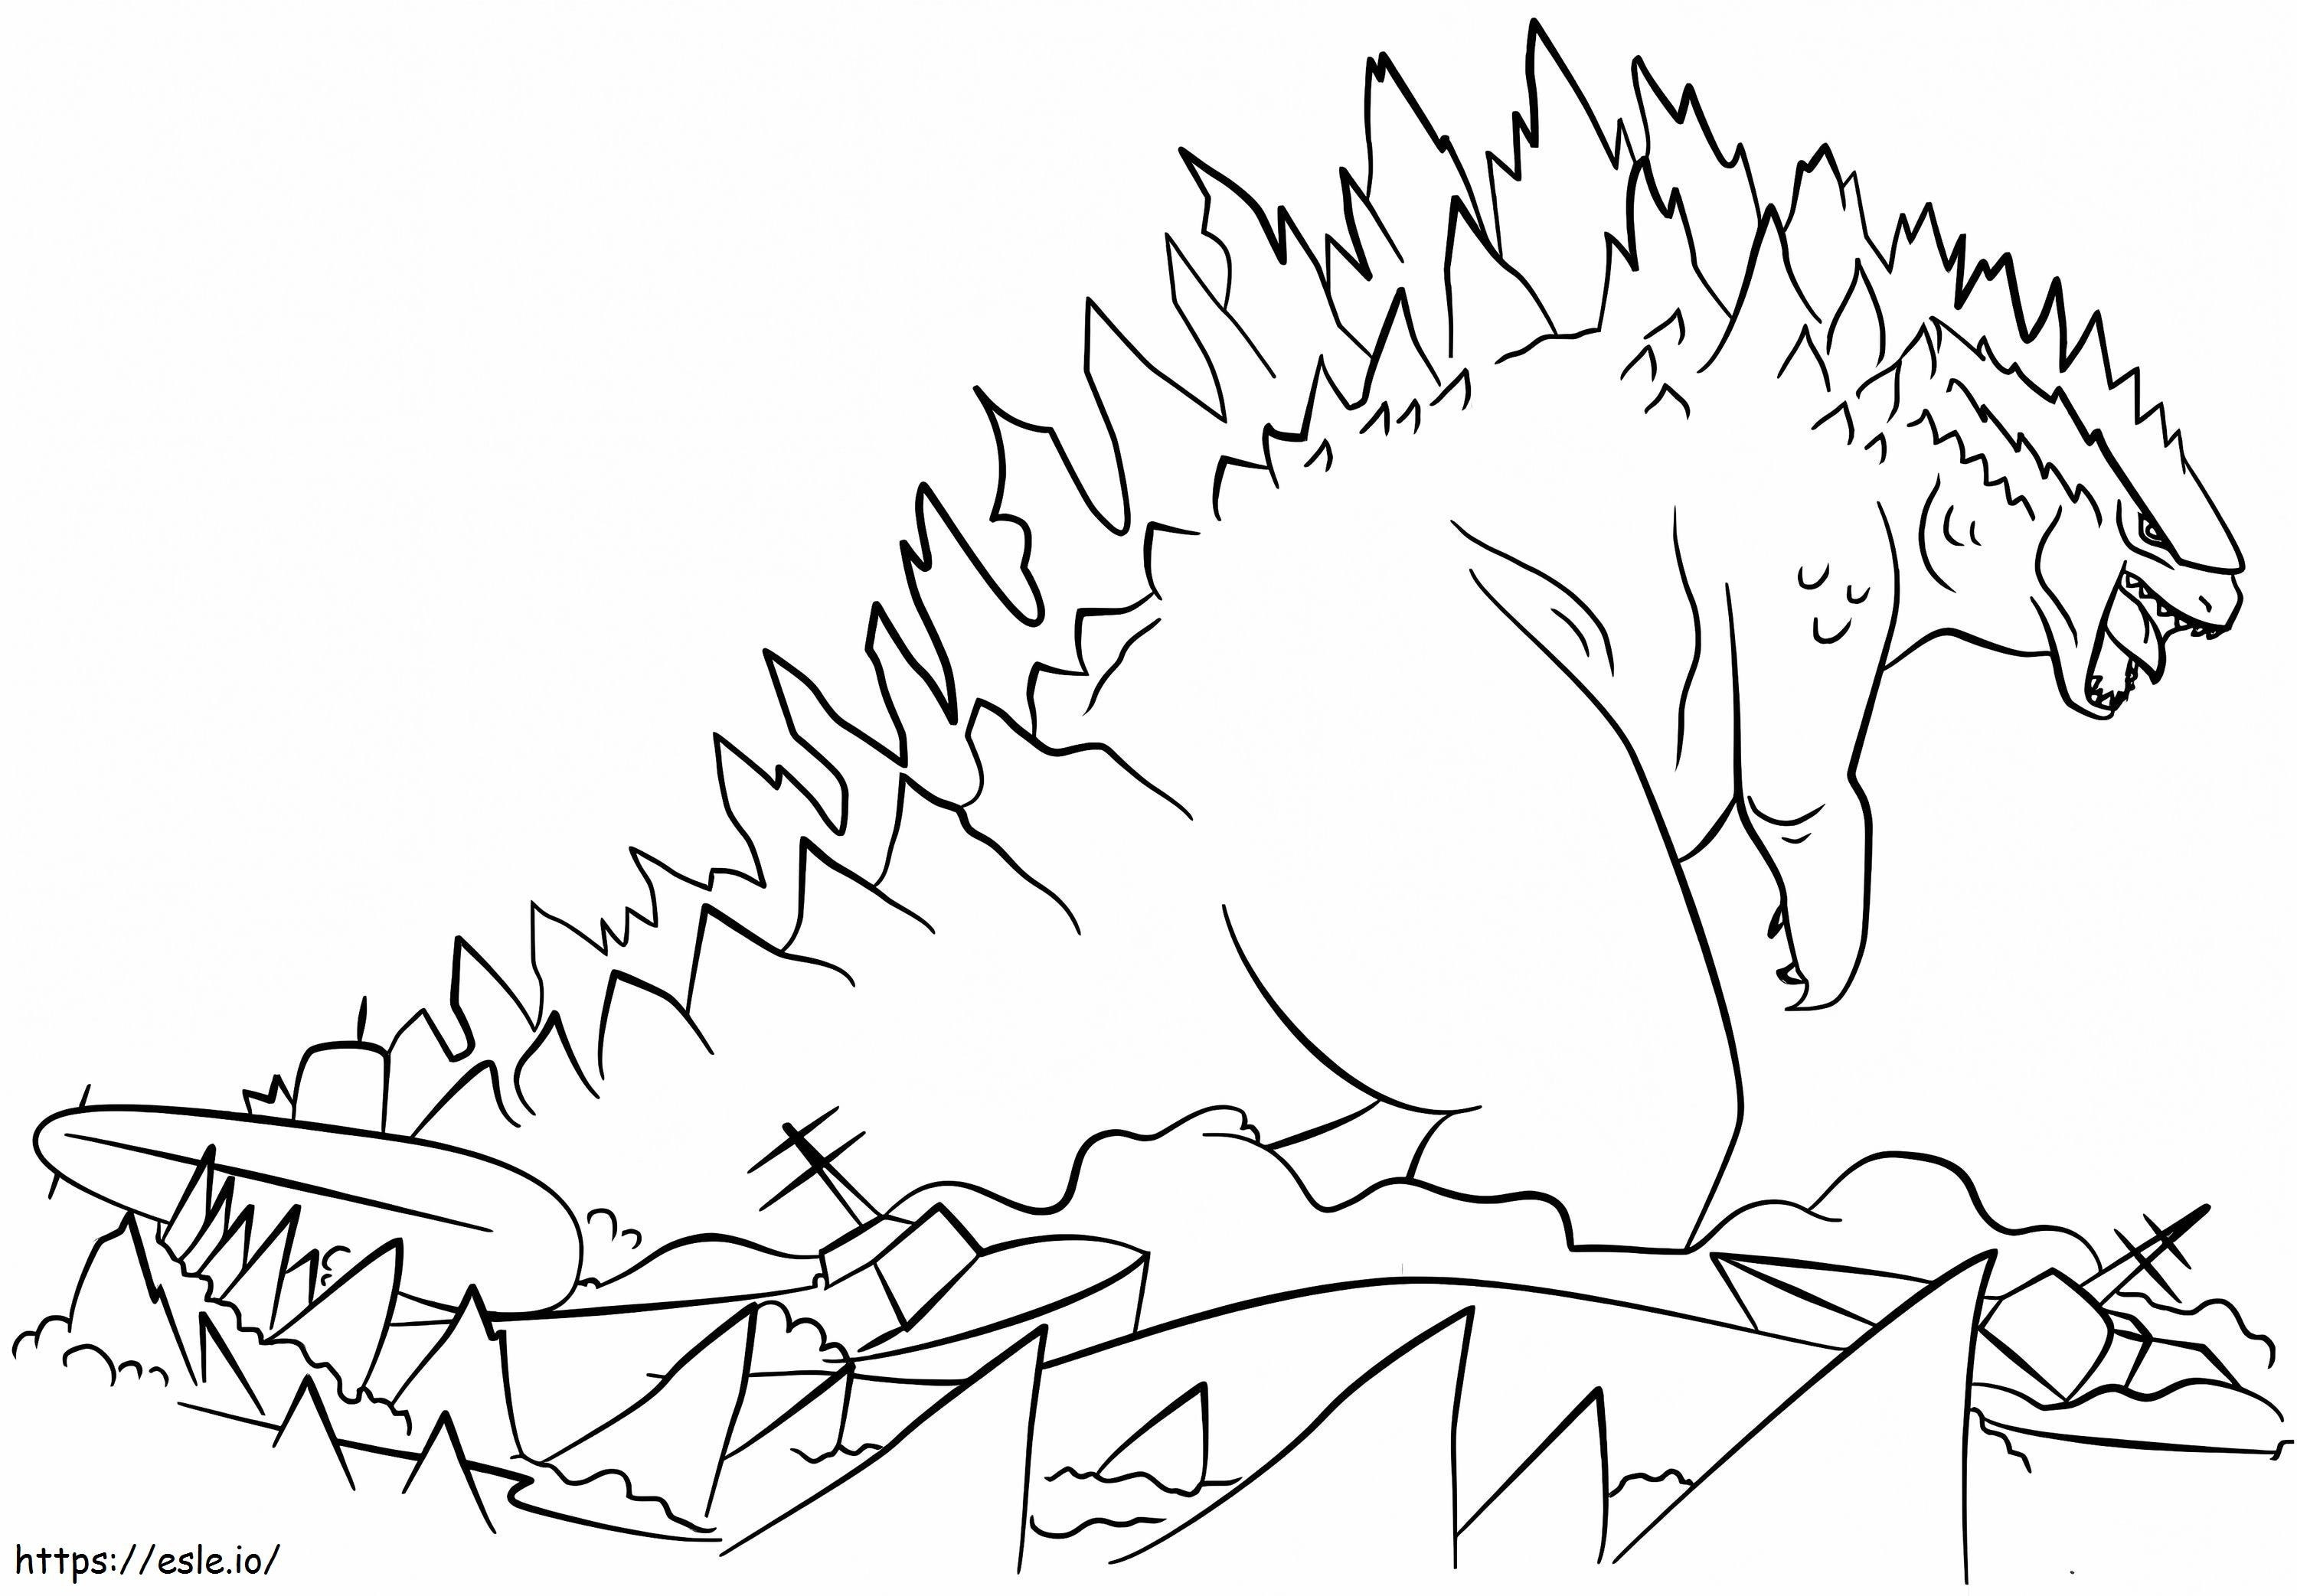 Erstaunlicher Godzilla ausmalbilder